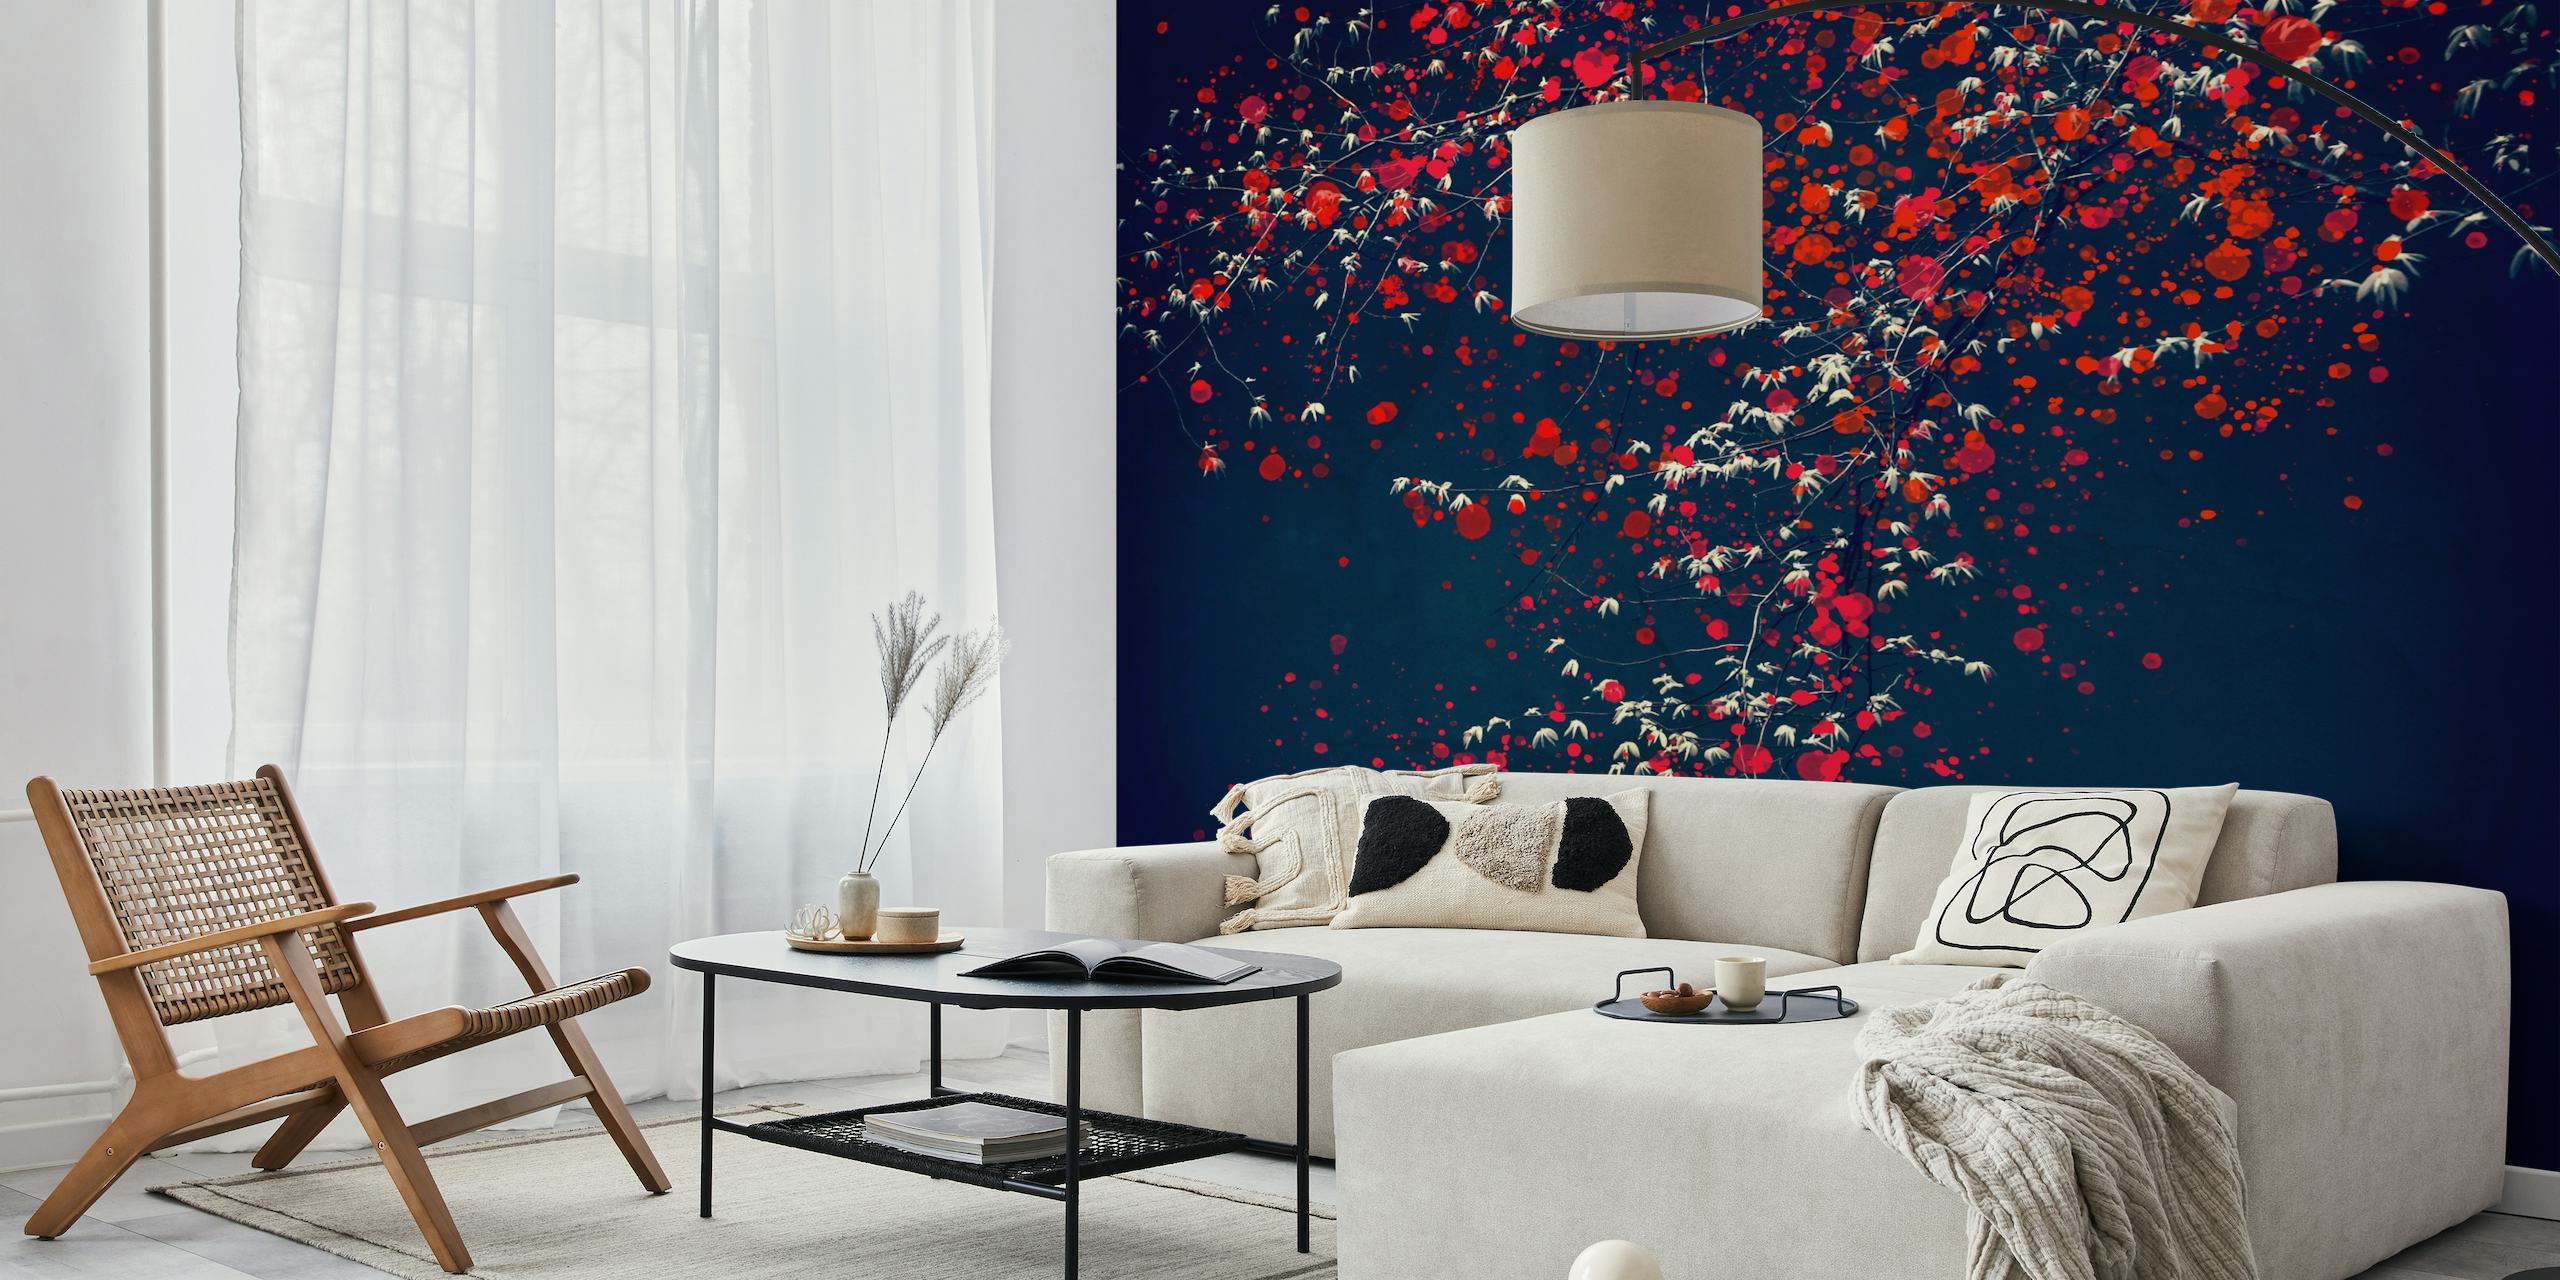 Apstraktni zidni mural stabla s crvenim i bijelim cvjetovima na tamnoplavoj pozadini